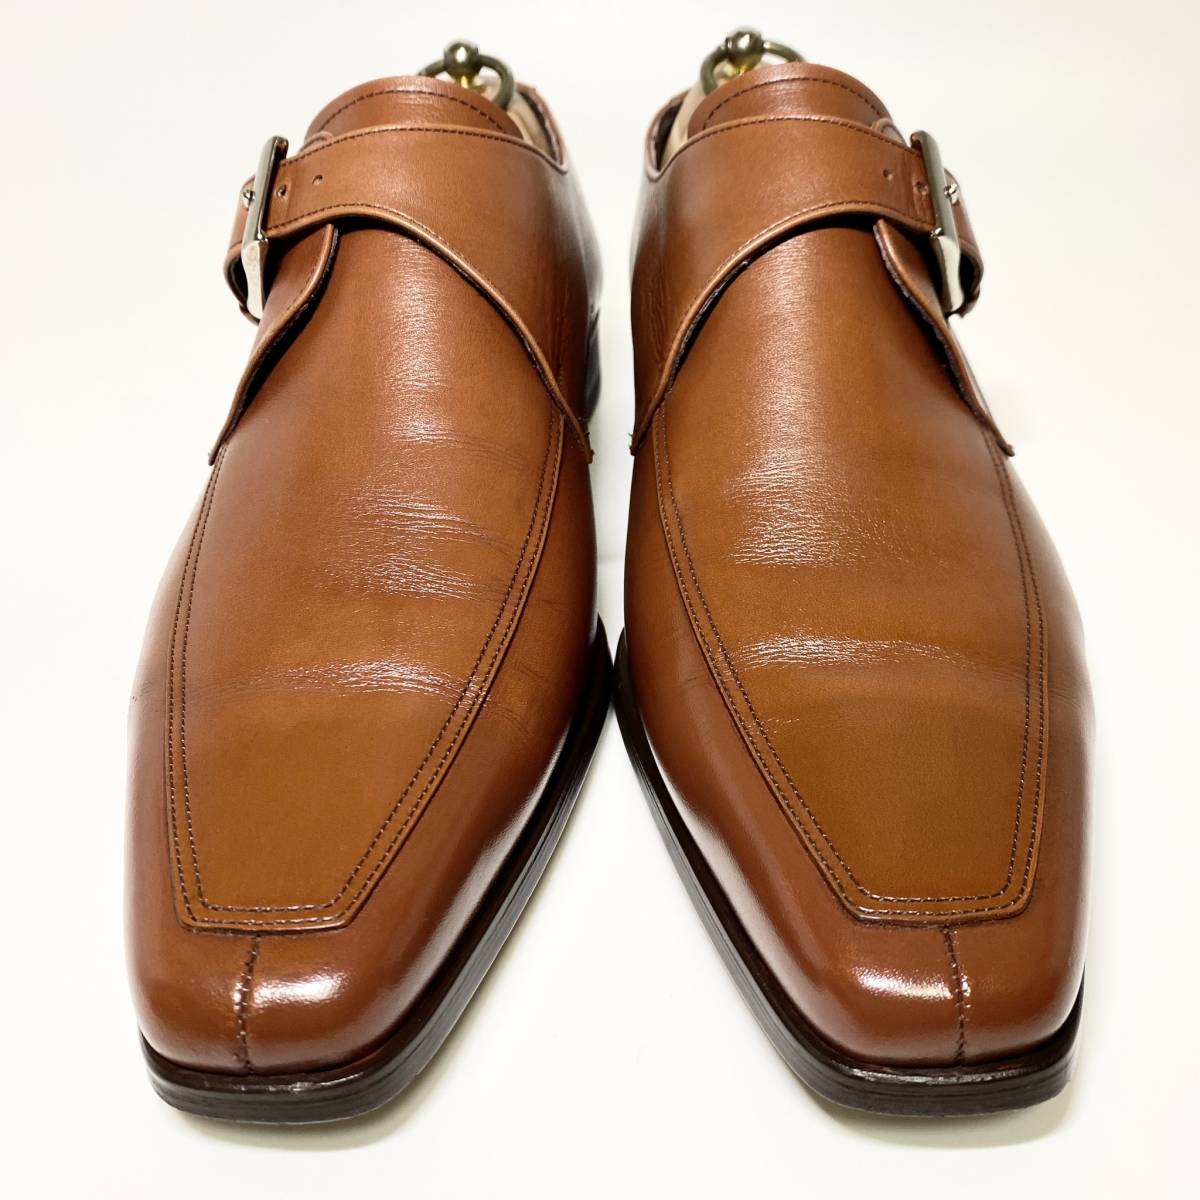 【REGAL】リーガル 24.5cm 茶 ブラウン シングルモンクストラップ Vチップ Uチップ 革靴 メンズ 本革 ビジネスシューズ 紳士靴 ドレス_画像2